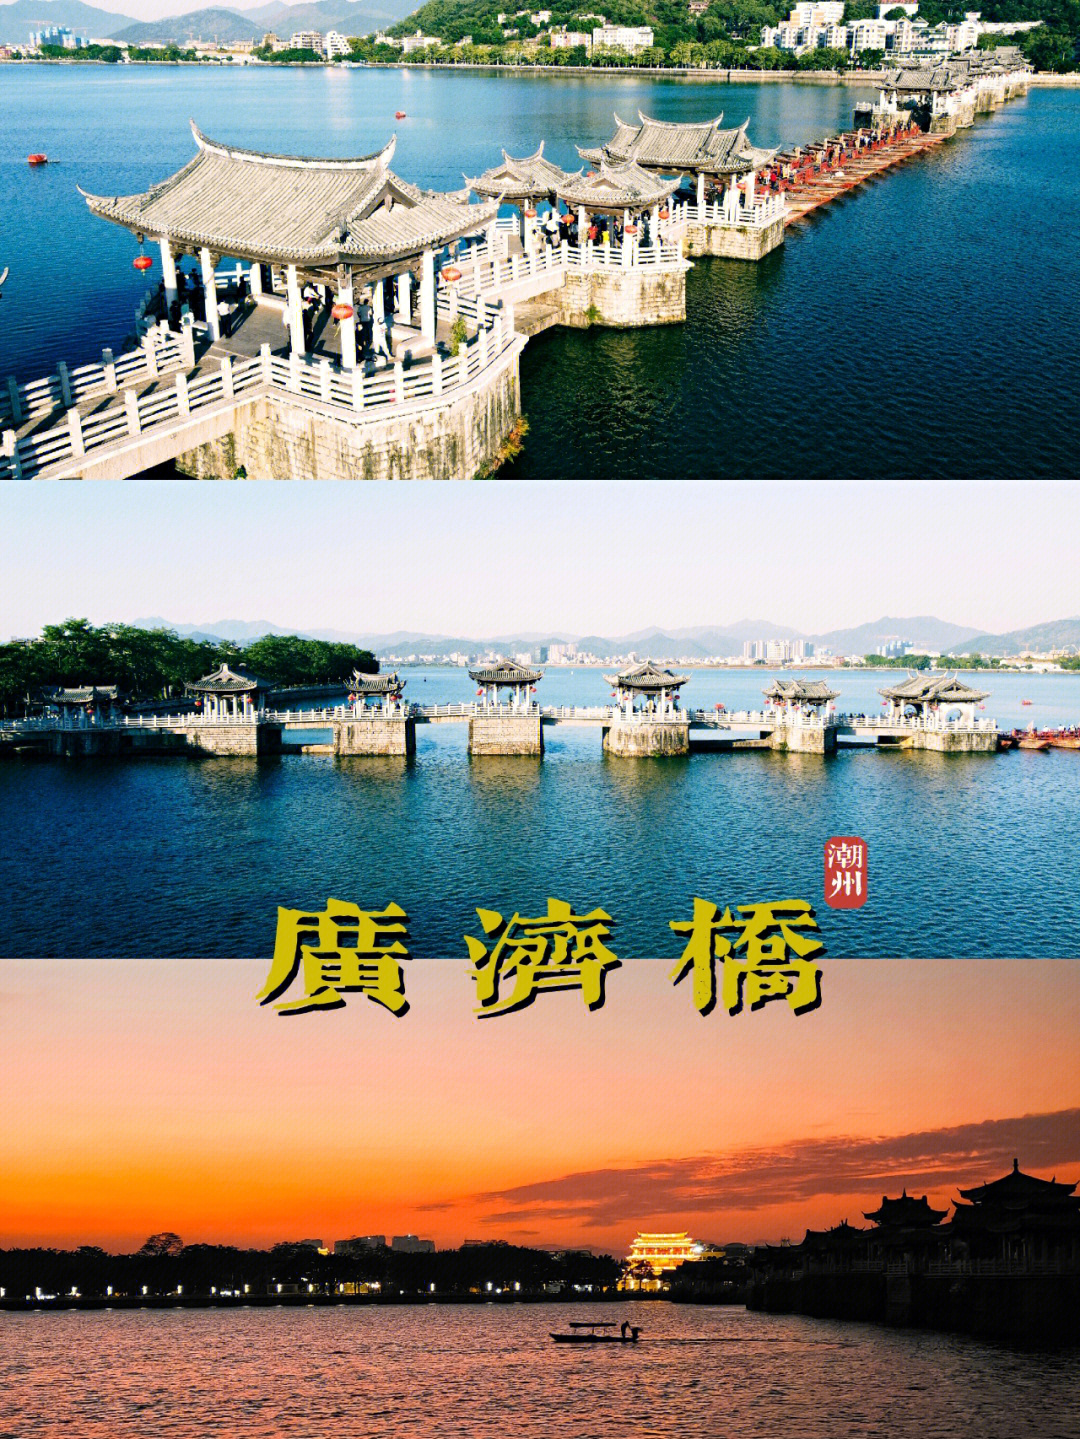 来潮州旅游必打卡的景点广济桥